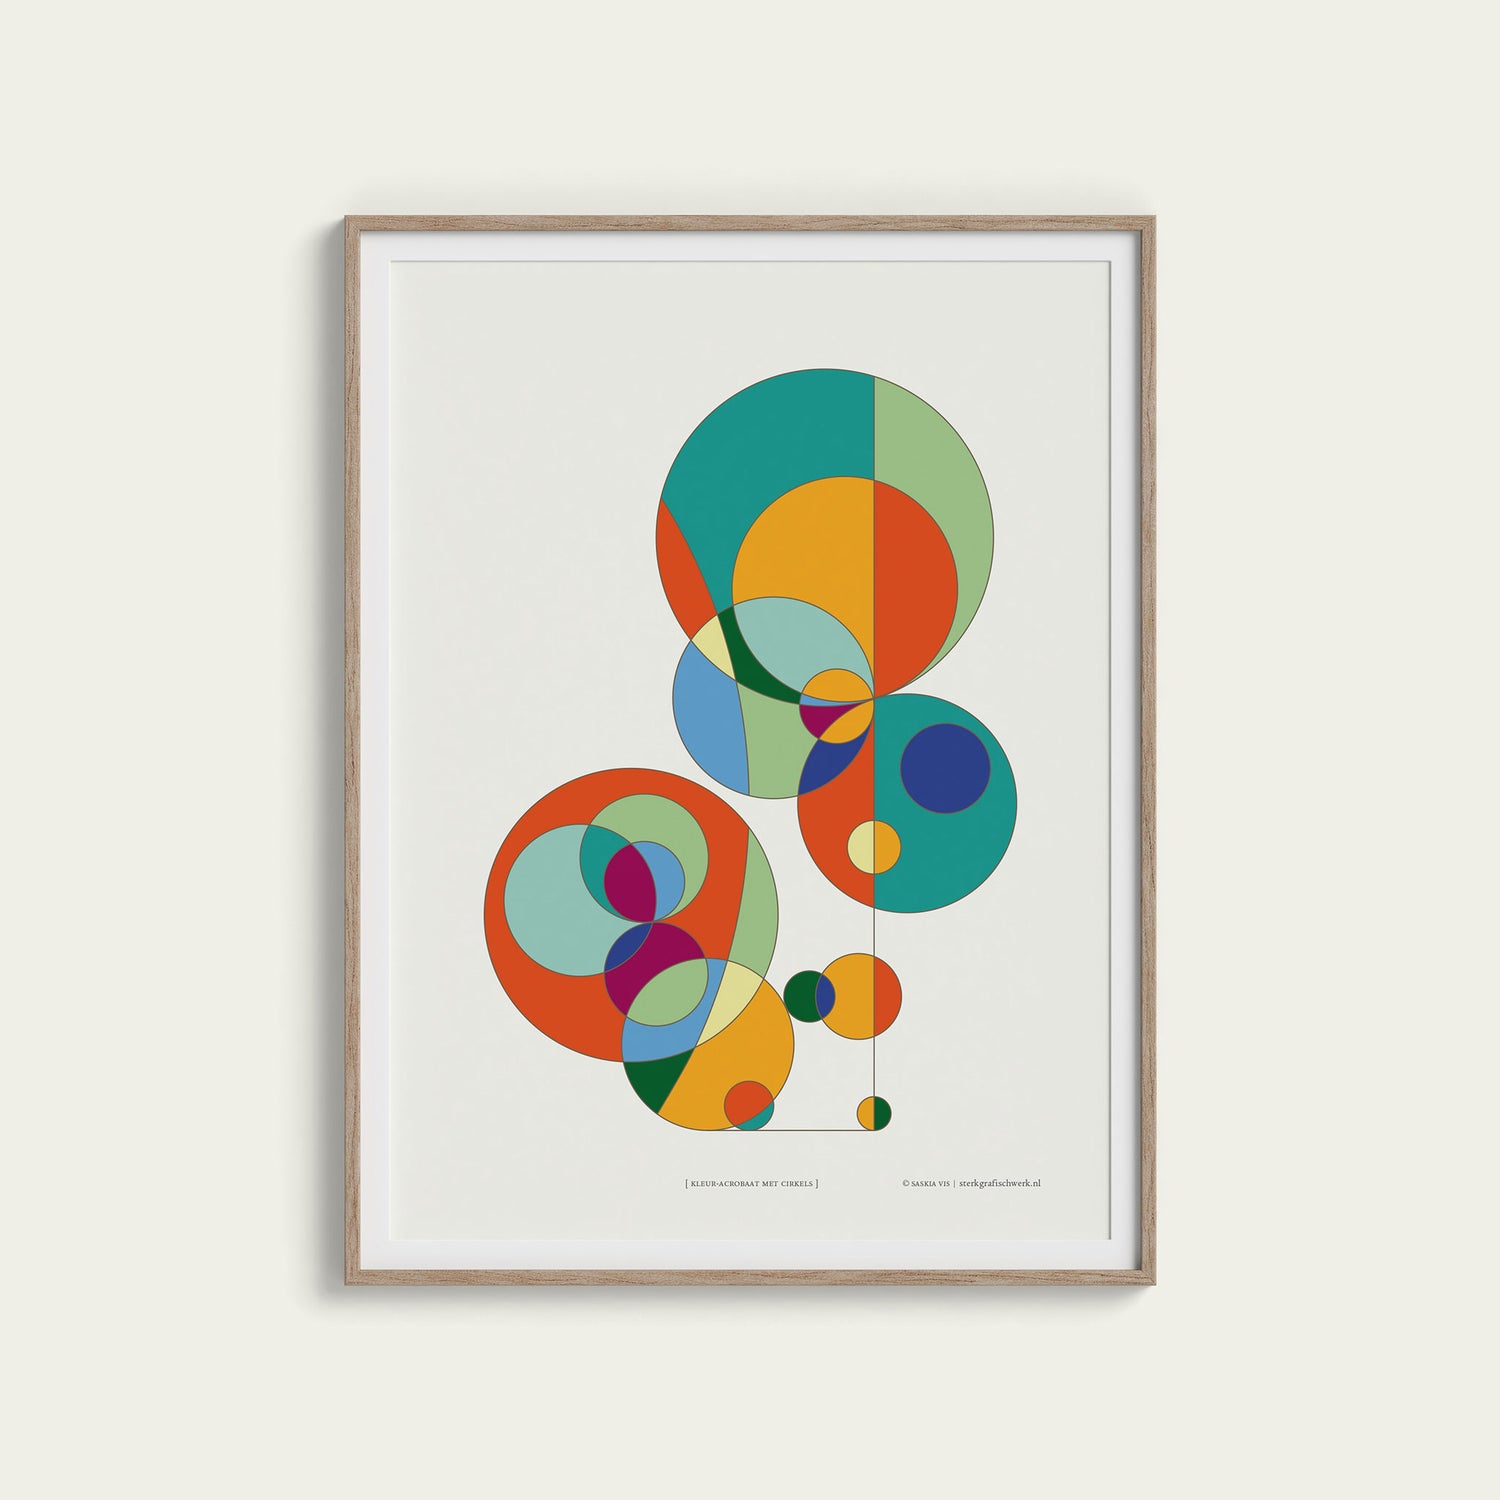 Poster "kleur-acrobaat met cirkels" ingelijst, hangend aan een creme gekleurde wand